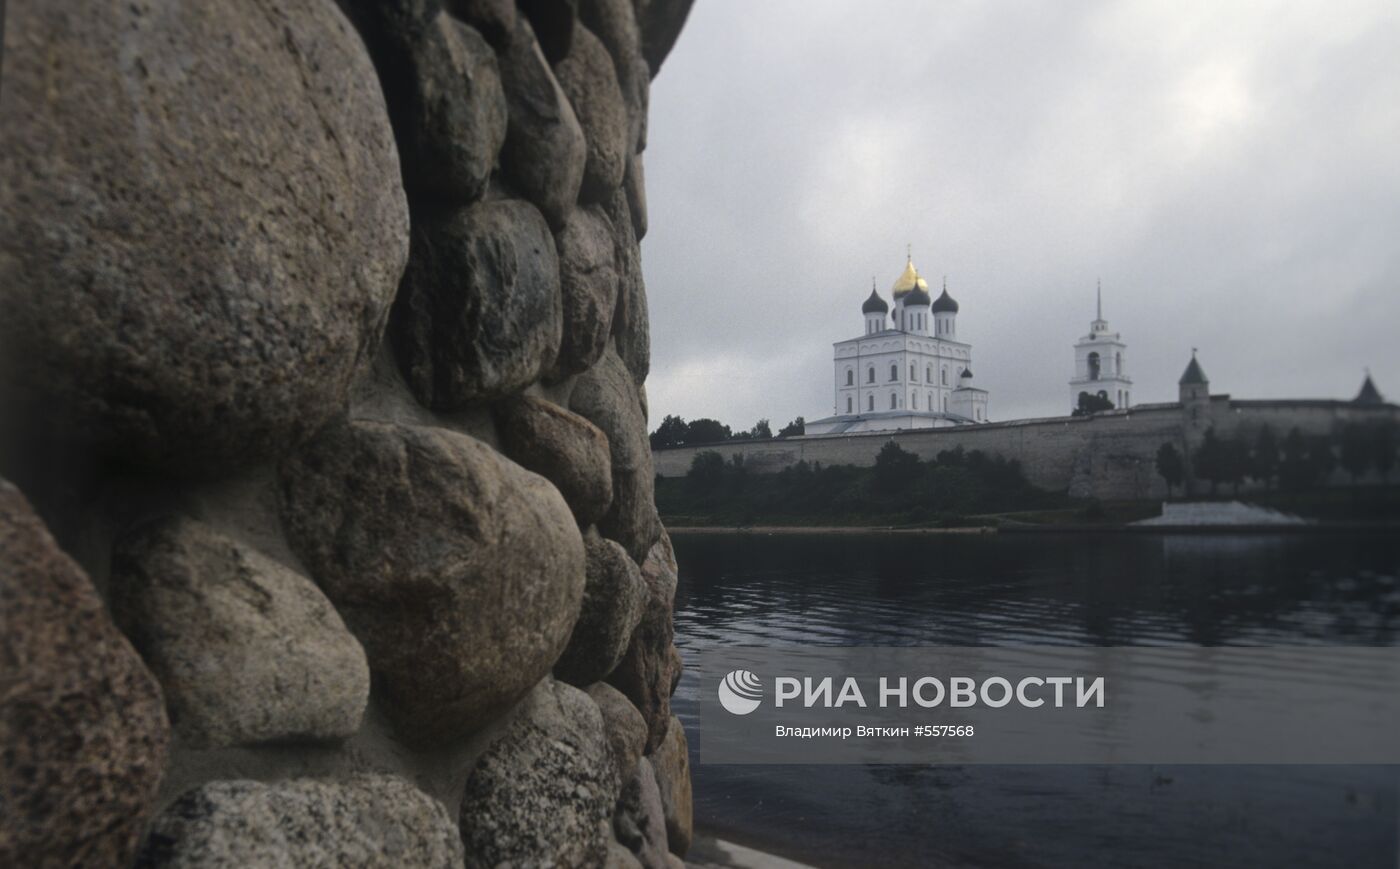 Вид на Псковский кремль и Троицкий собор